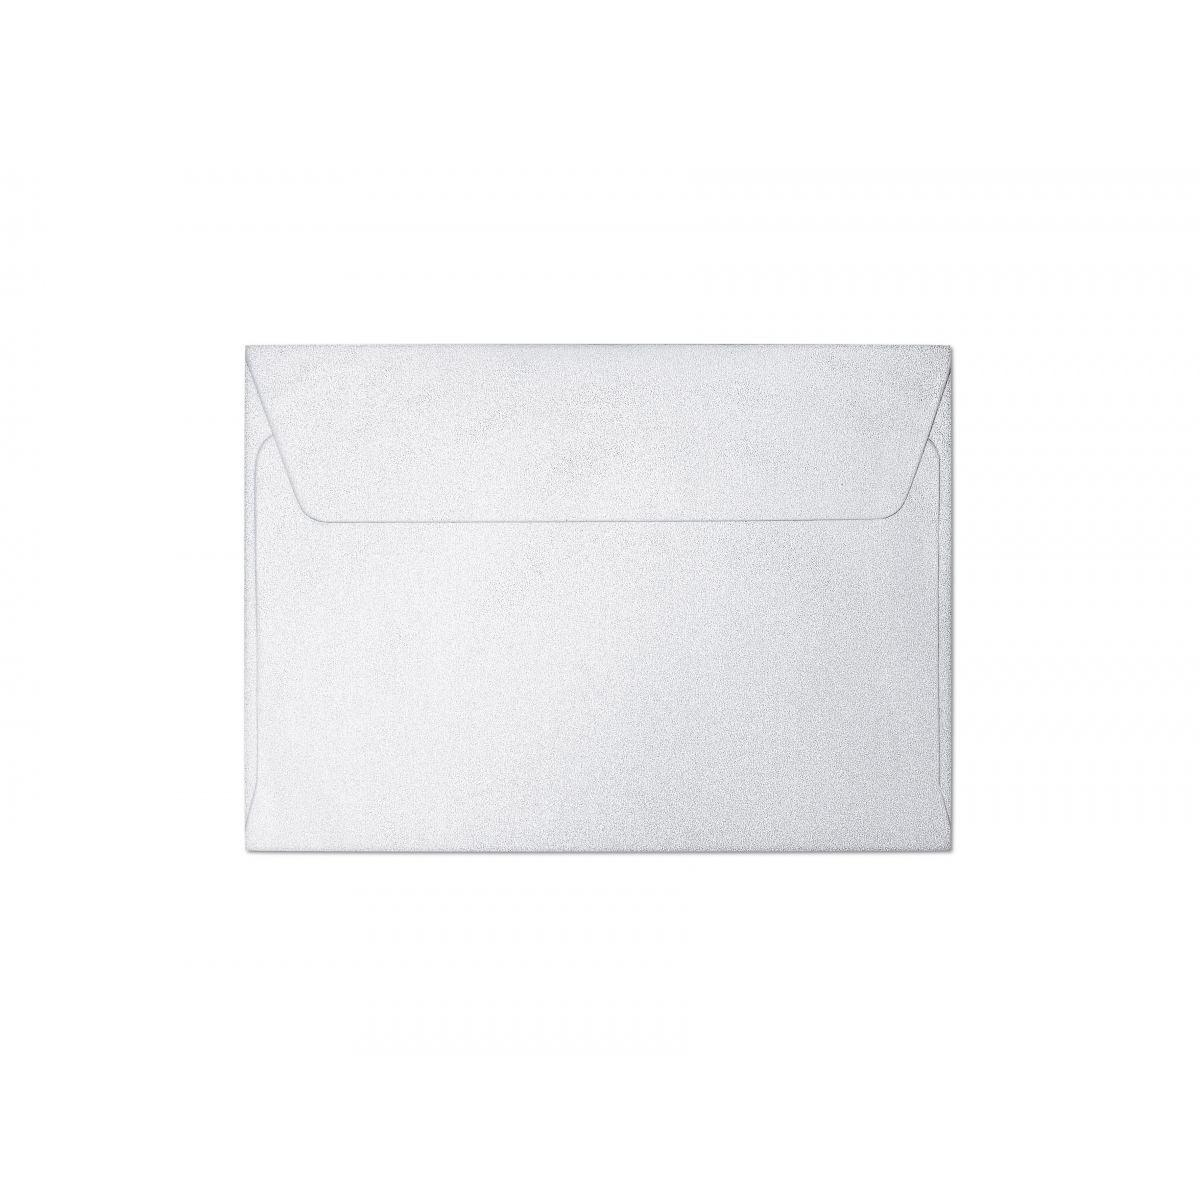 Koperta Millenium C6 biały diamentowy Galeria Papieru (280216) 10 sztuk